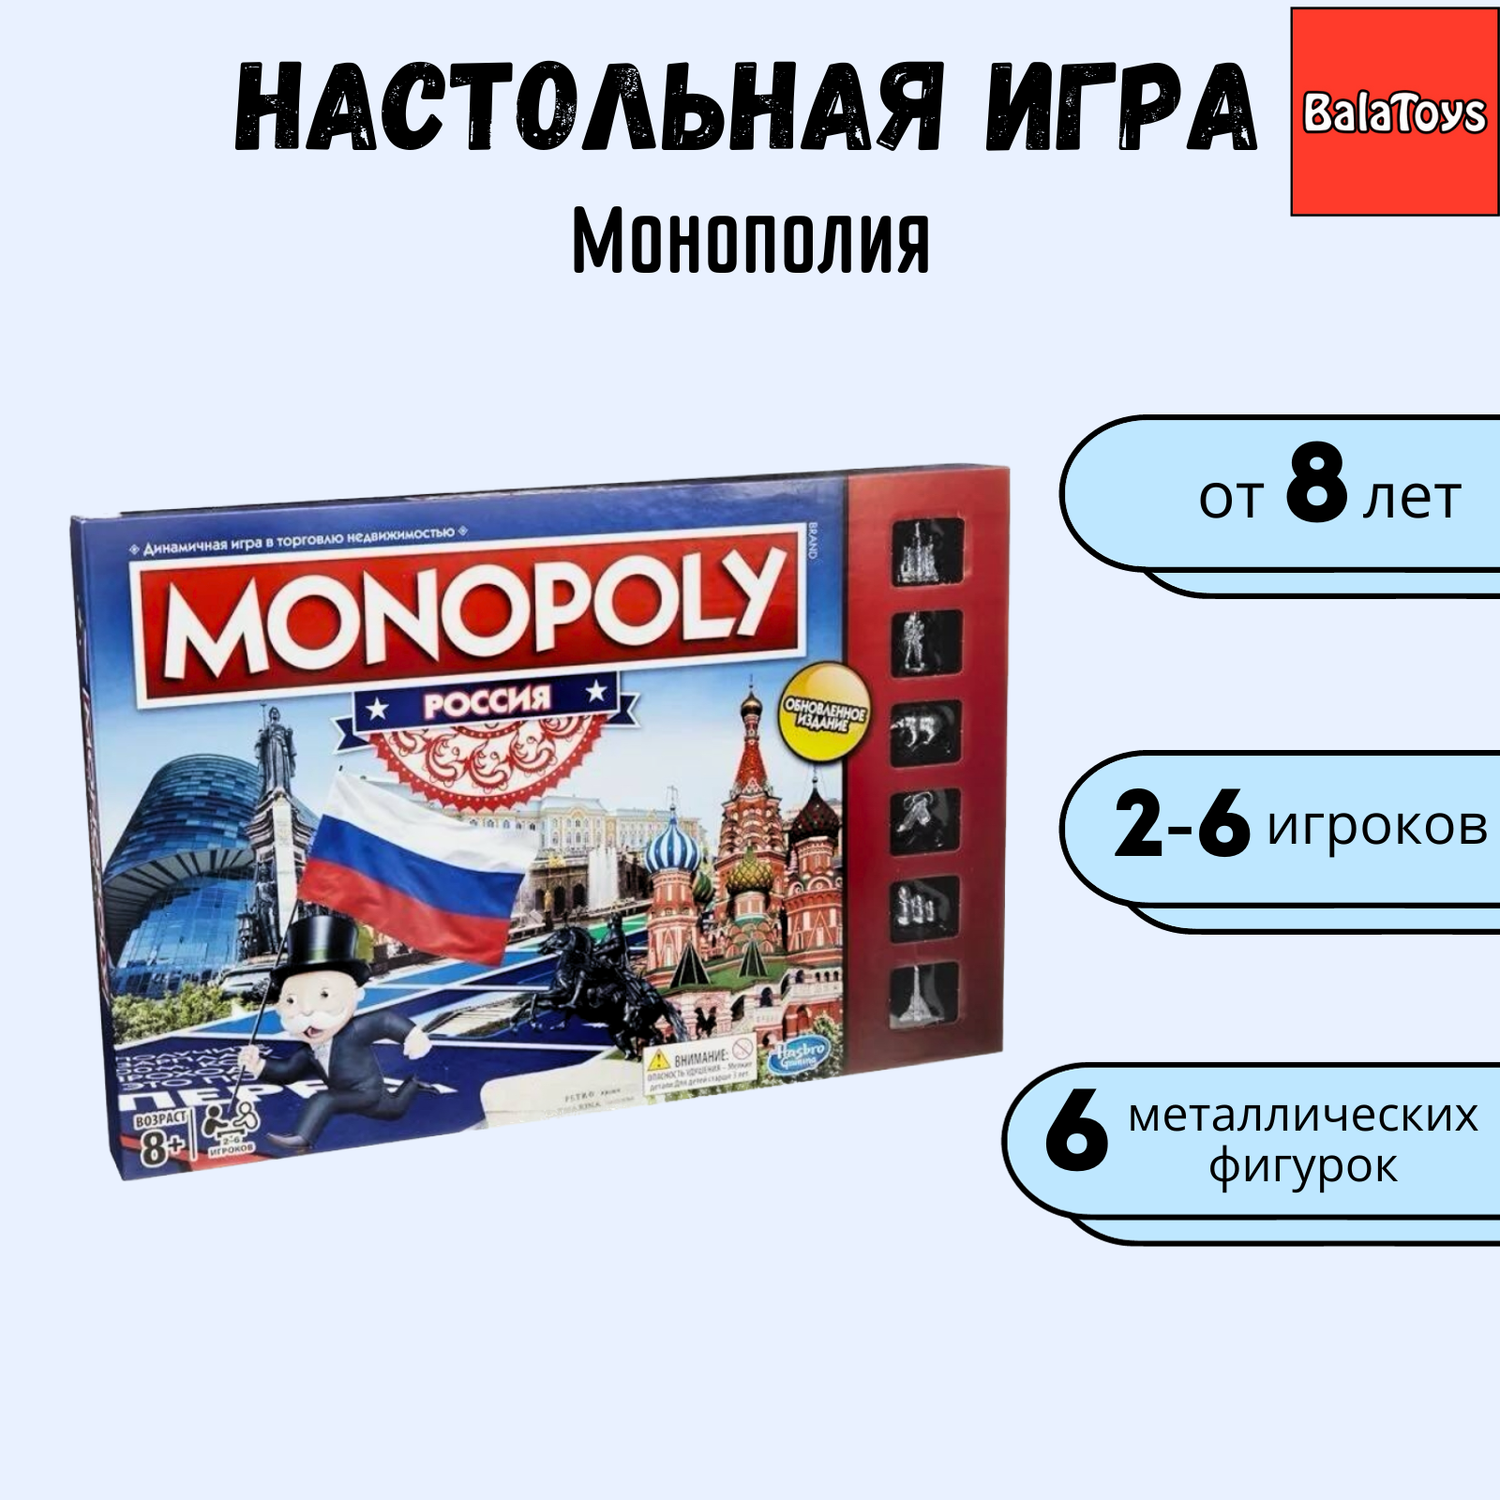 Монополия настольная игра BalaToys с металлическими фигурками Россия - фото 1